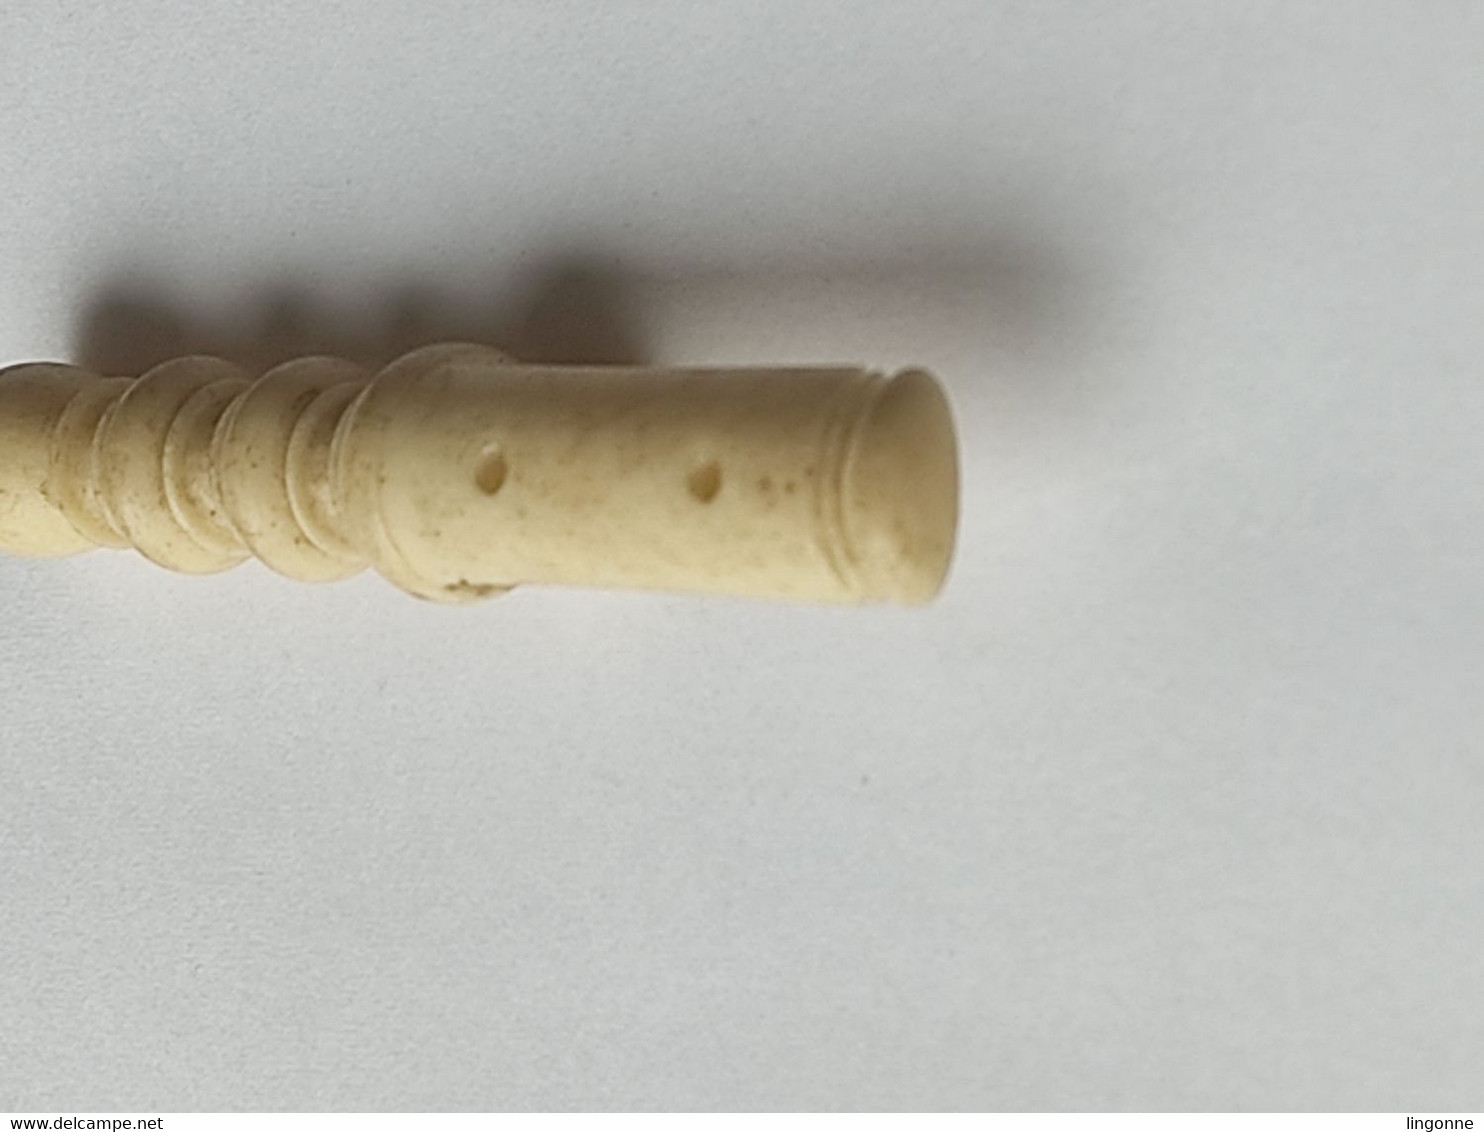 ANCIEN ACCESSOIRE Sculpté En OS, DE CANNE OMBRELLE PARAPLUIE EPOQUE FIN 19ème SIECLE  Long 6,8 Cm Env - Umbrellas, Parasols